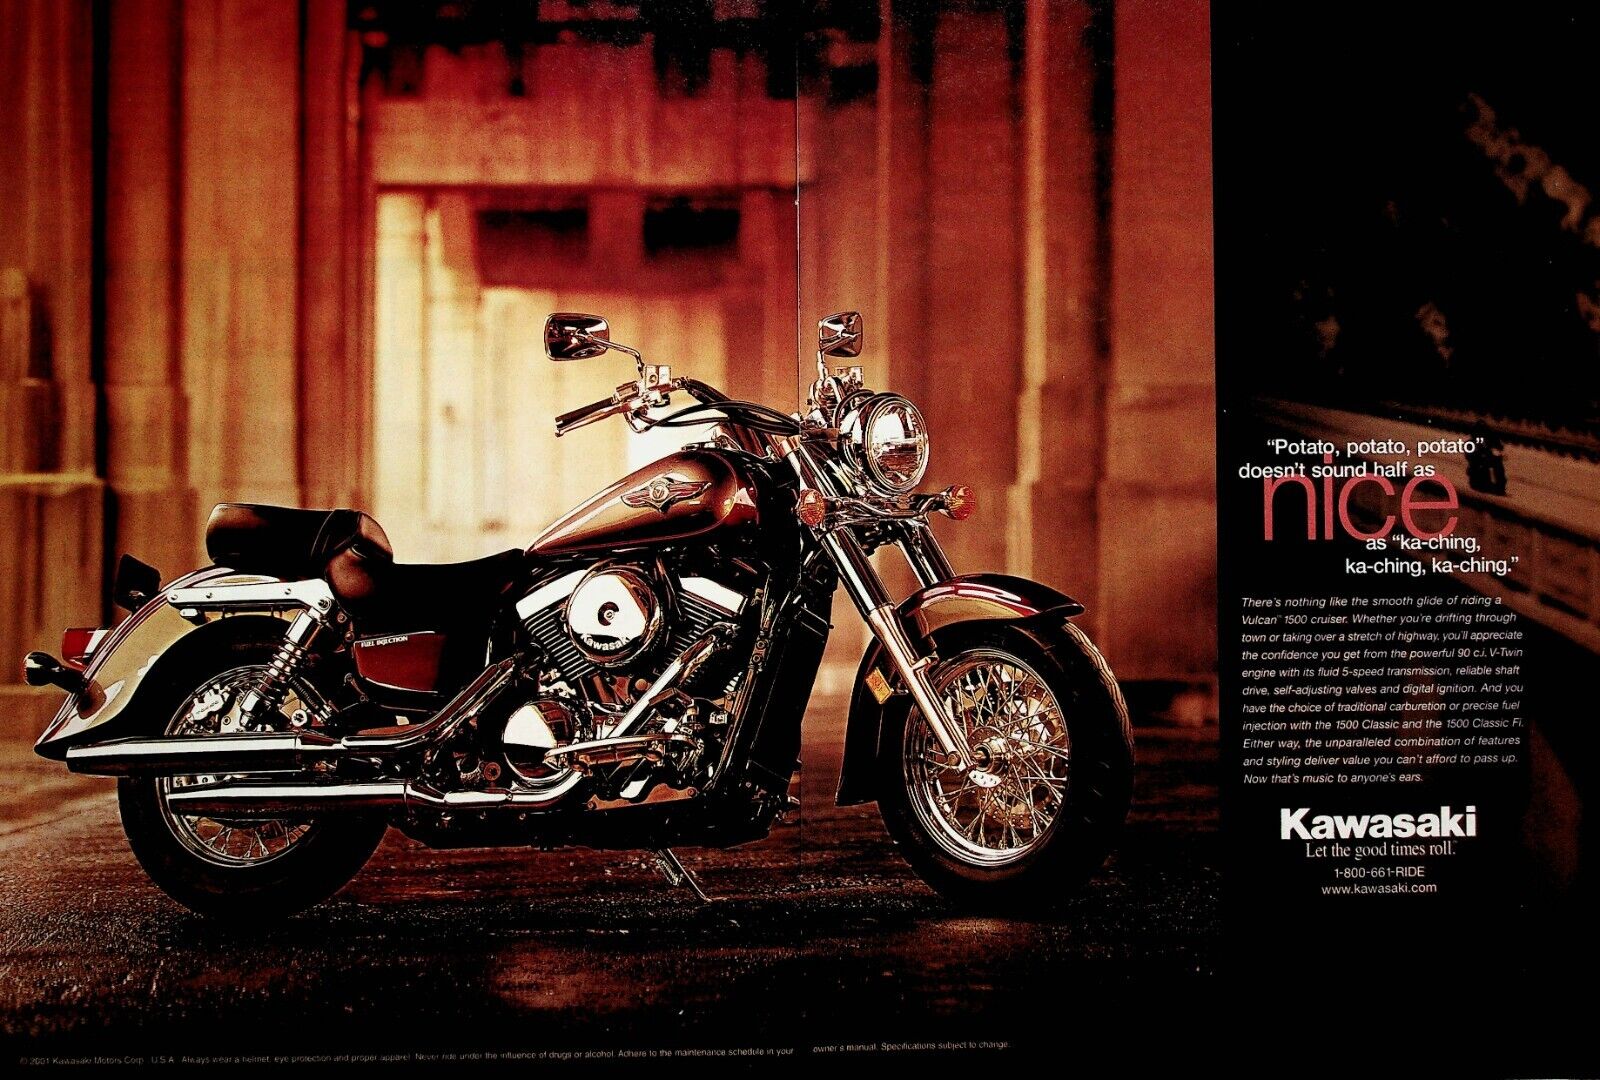 2001 Kawasaki Vulcan 1500 Cruiser - 2-Page Vintage Motorcycle Ad